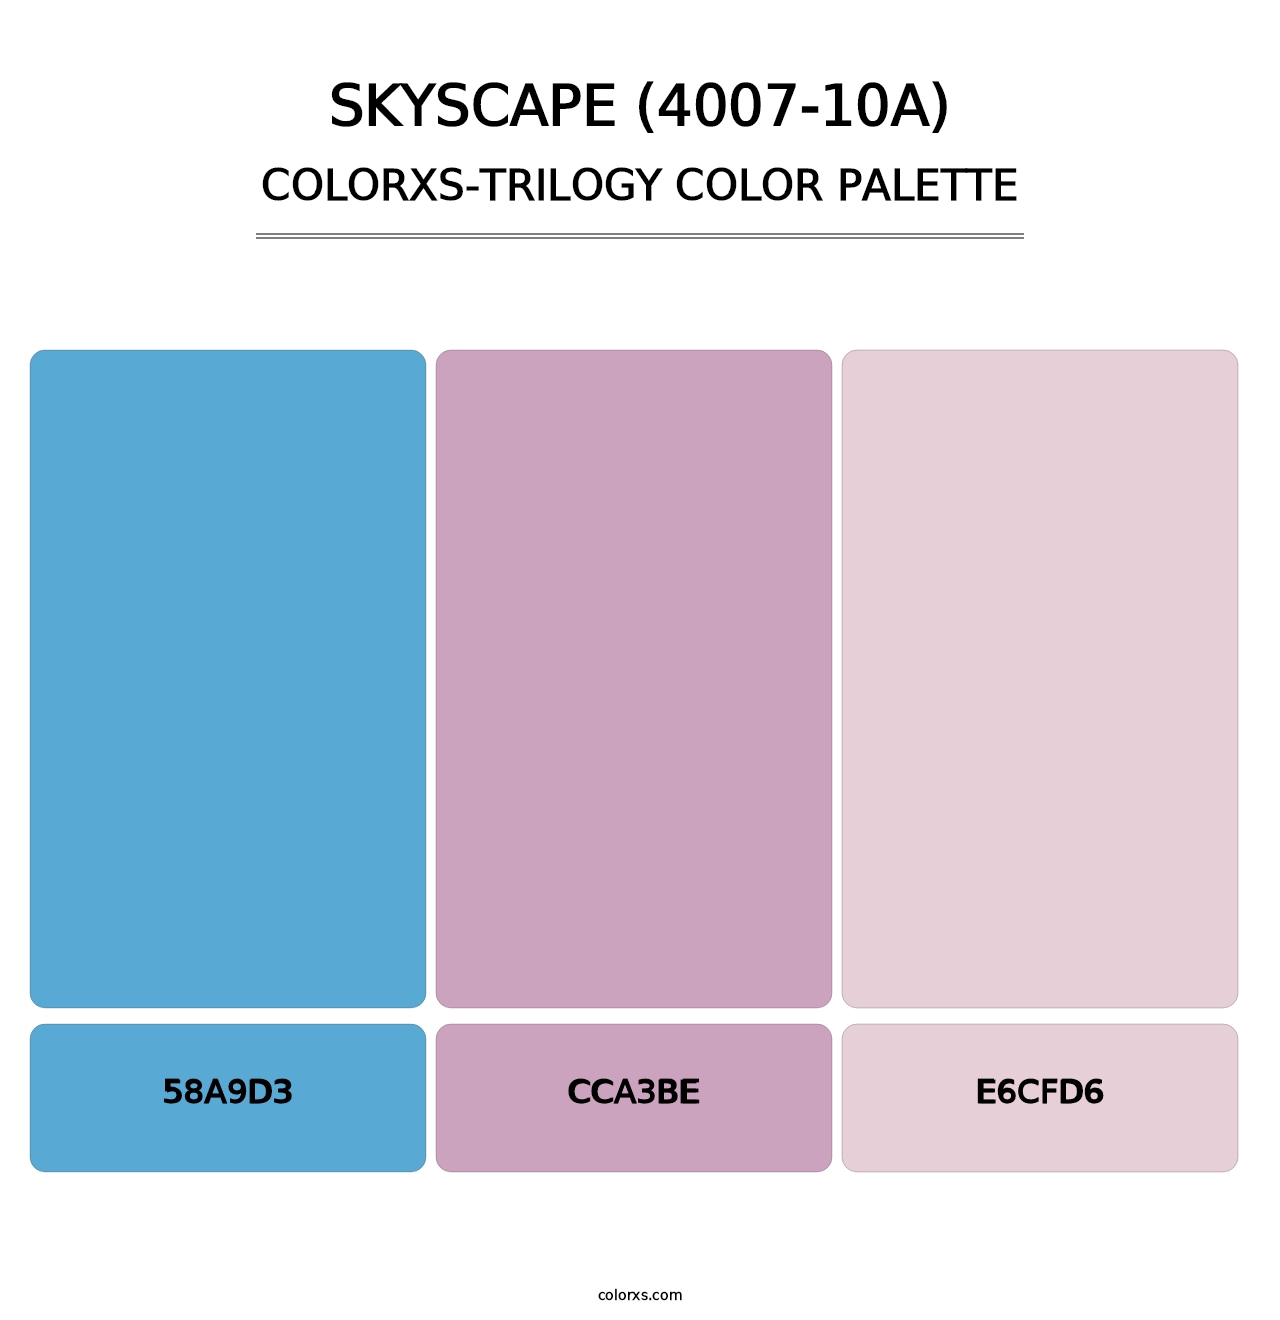 Skyscape (4007-10A) - Colorxs Trilogy Palette